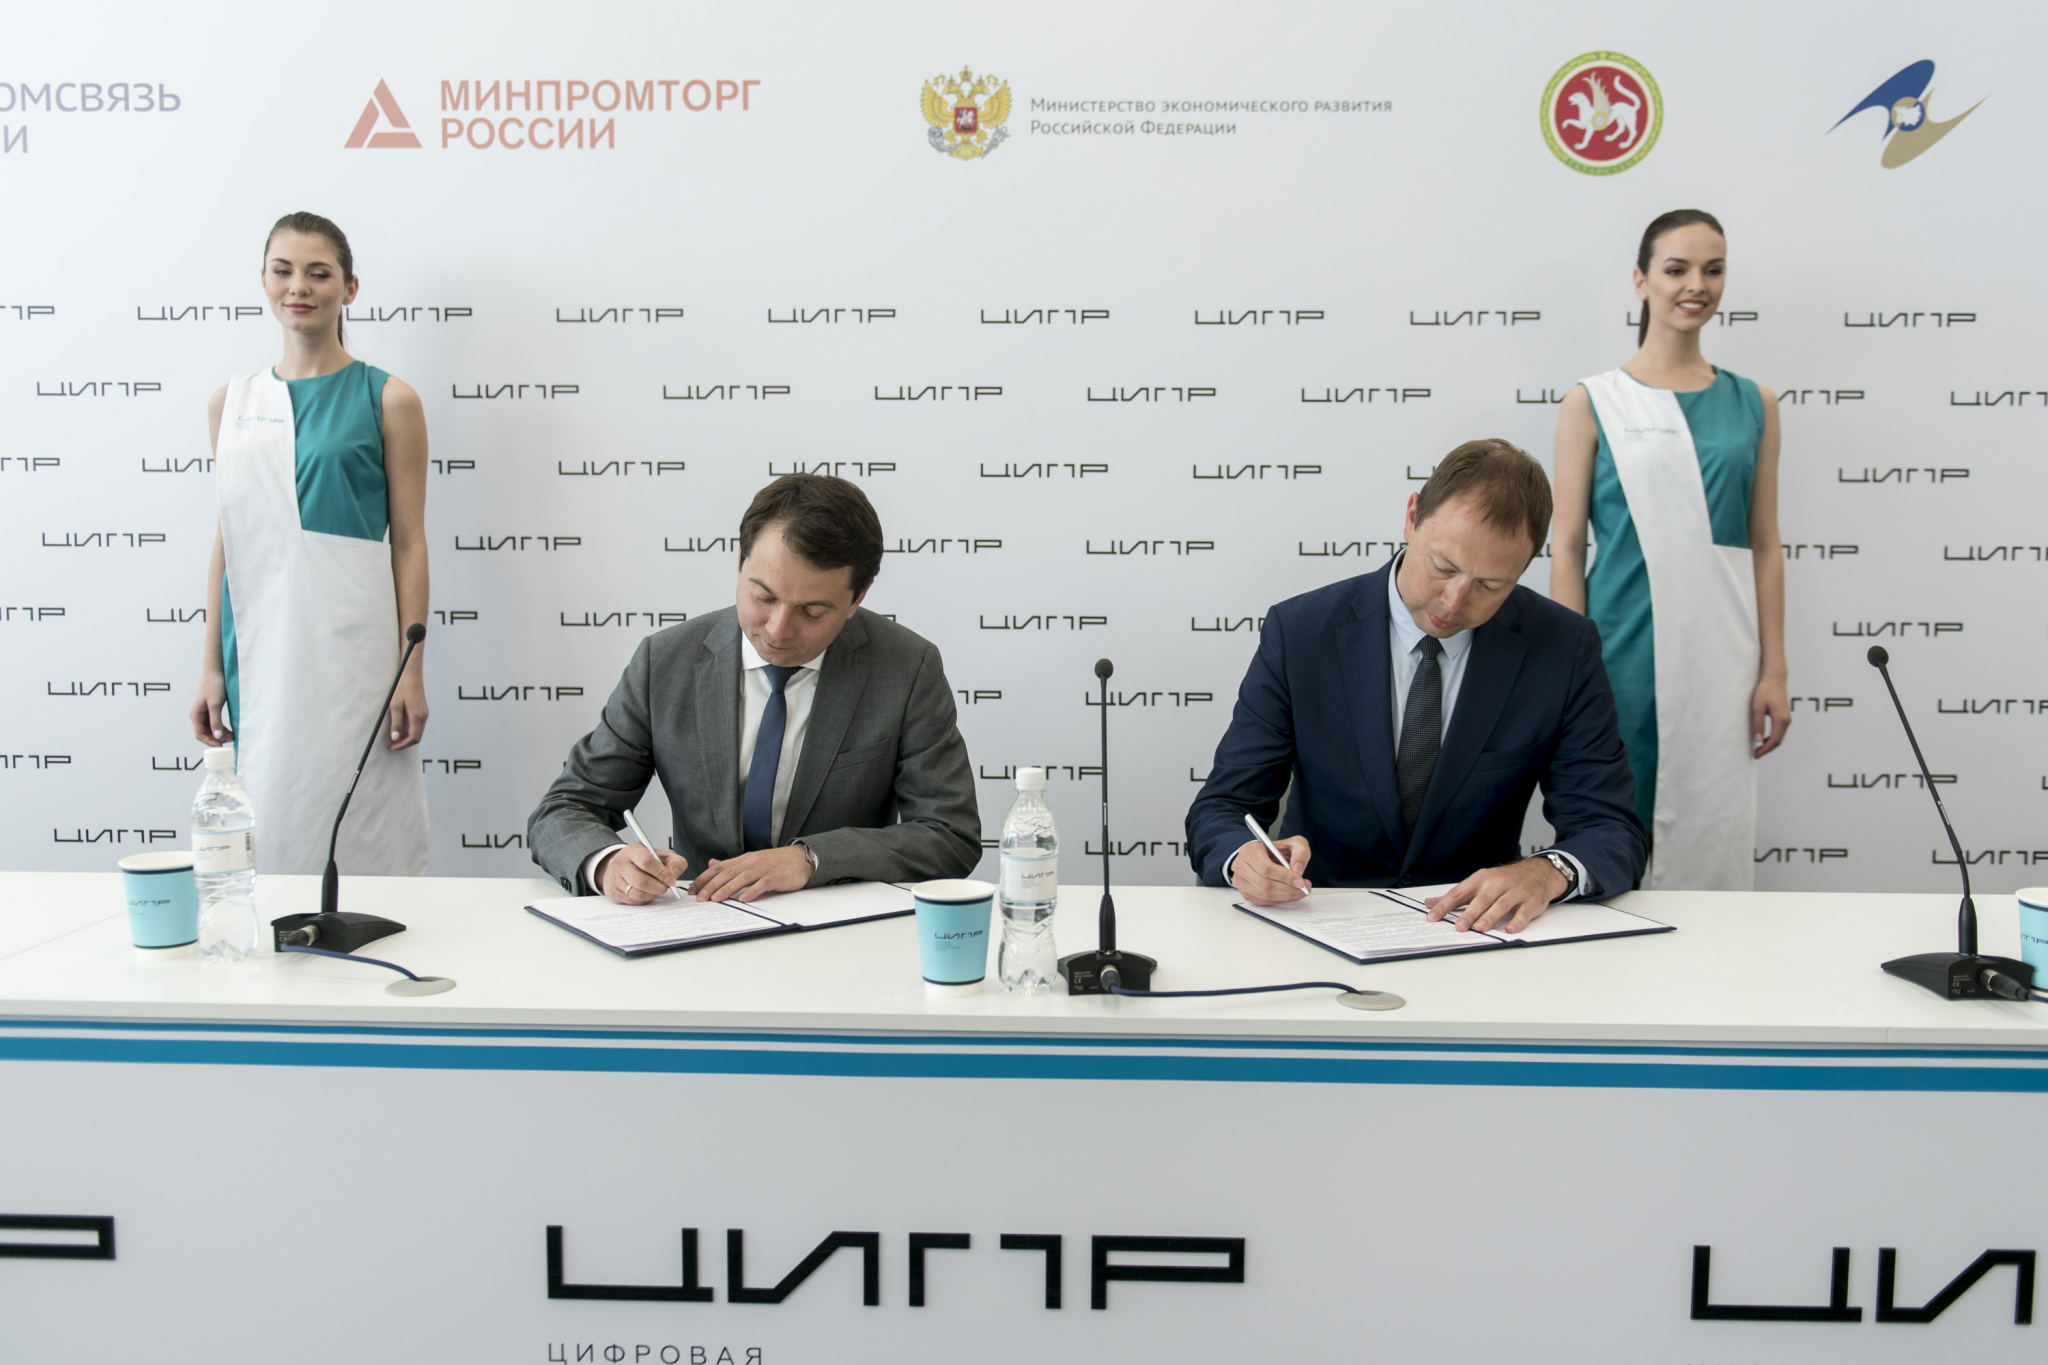 Минстрой России и «Ростелеком» подписали соглашение о концепции «Умного города»